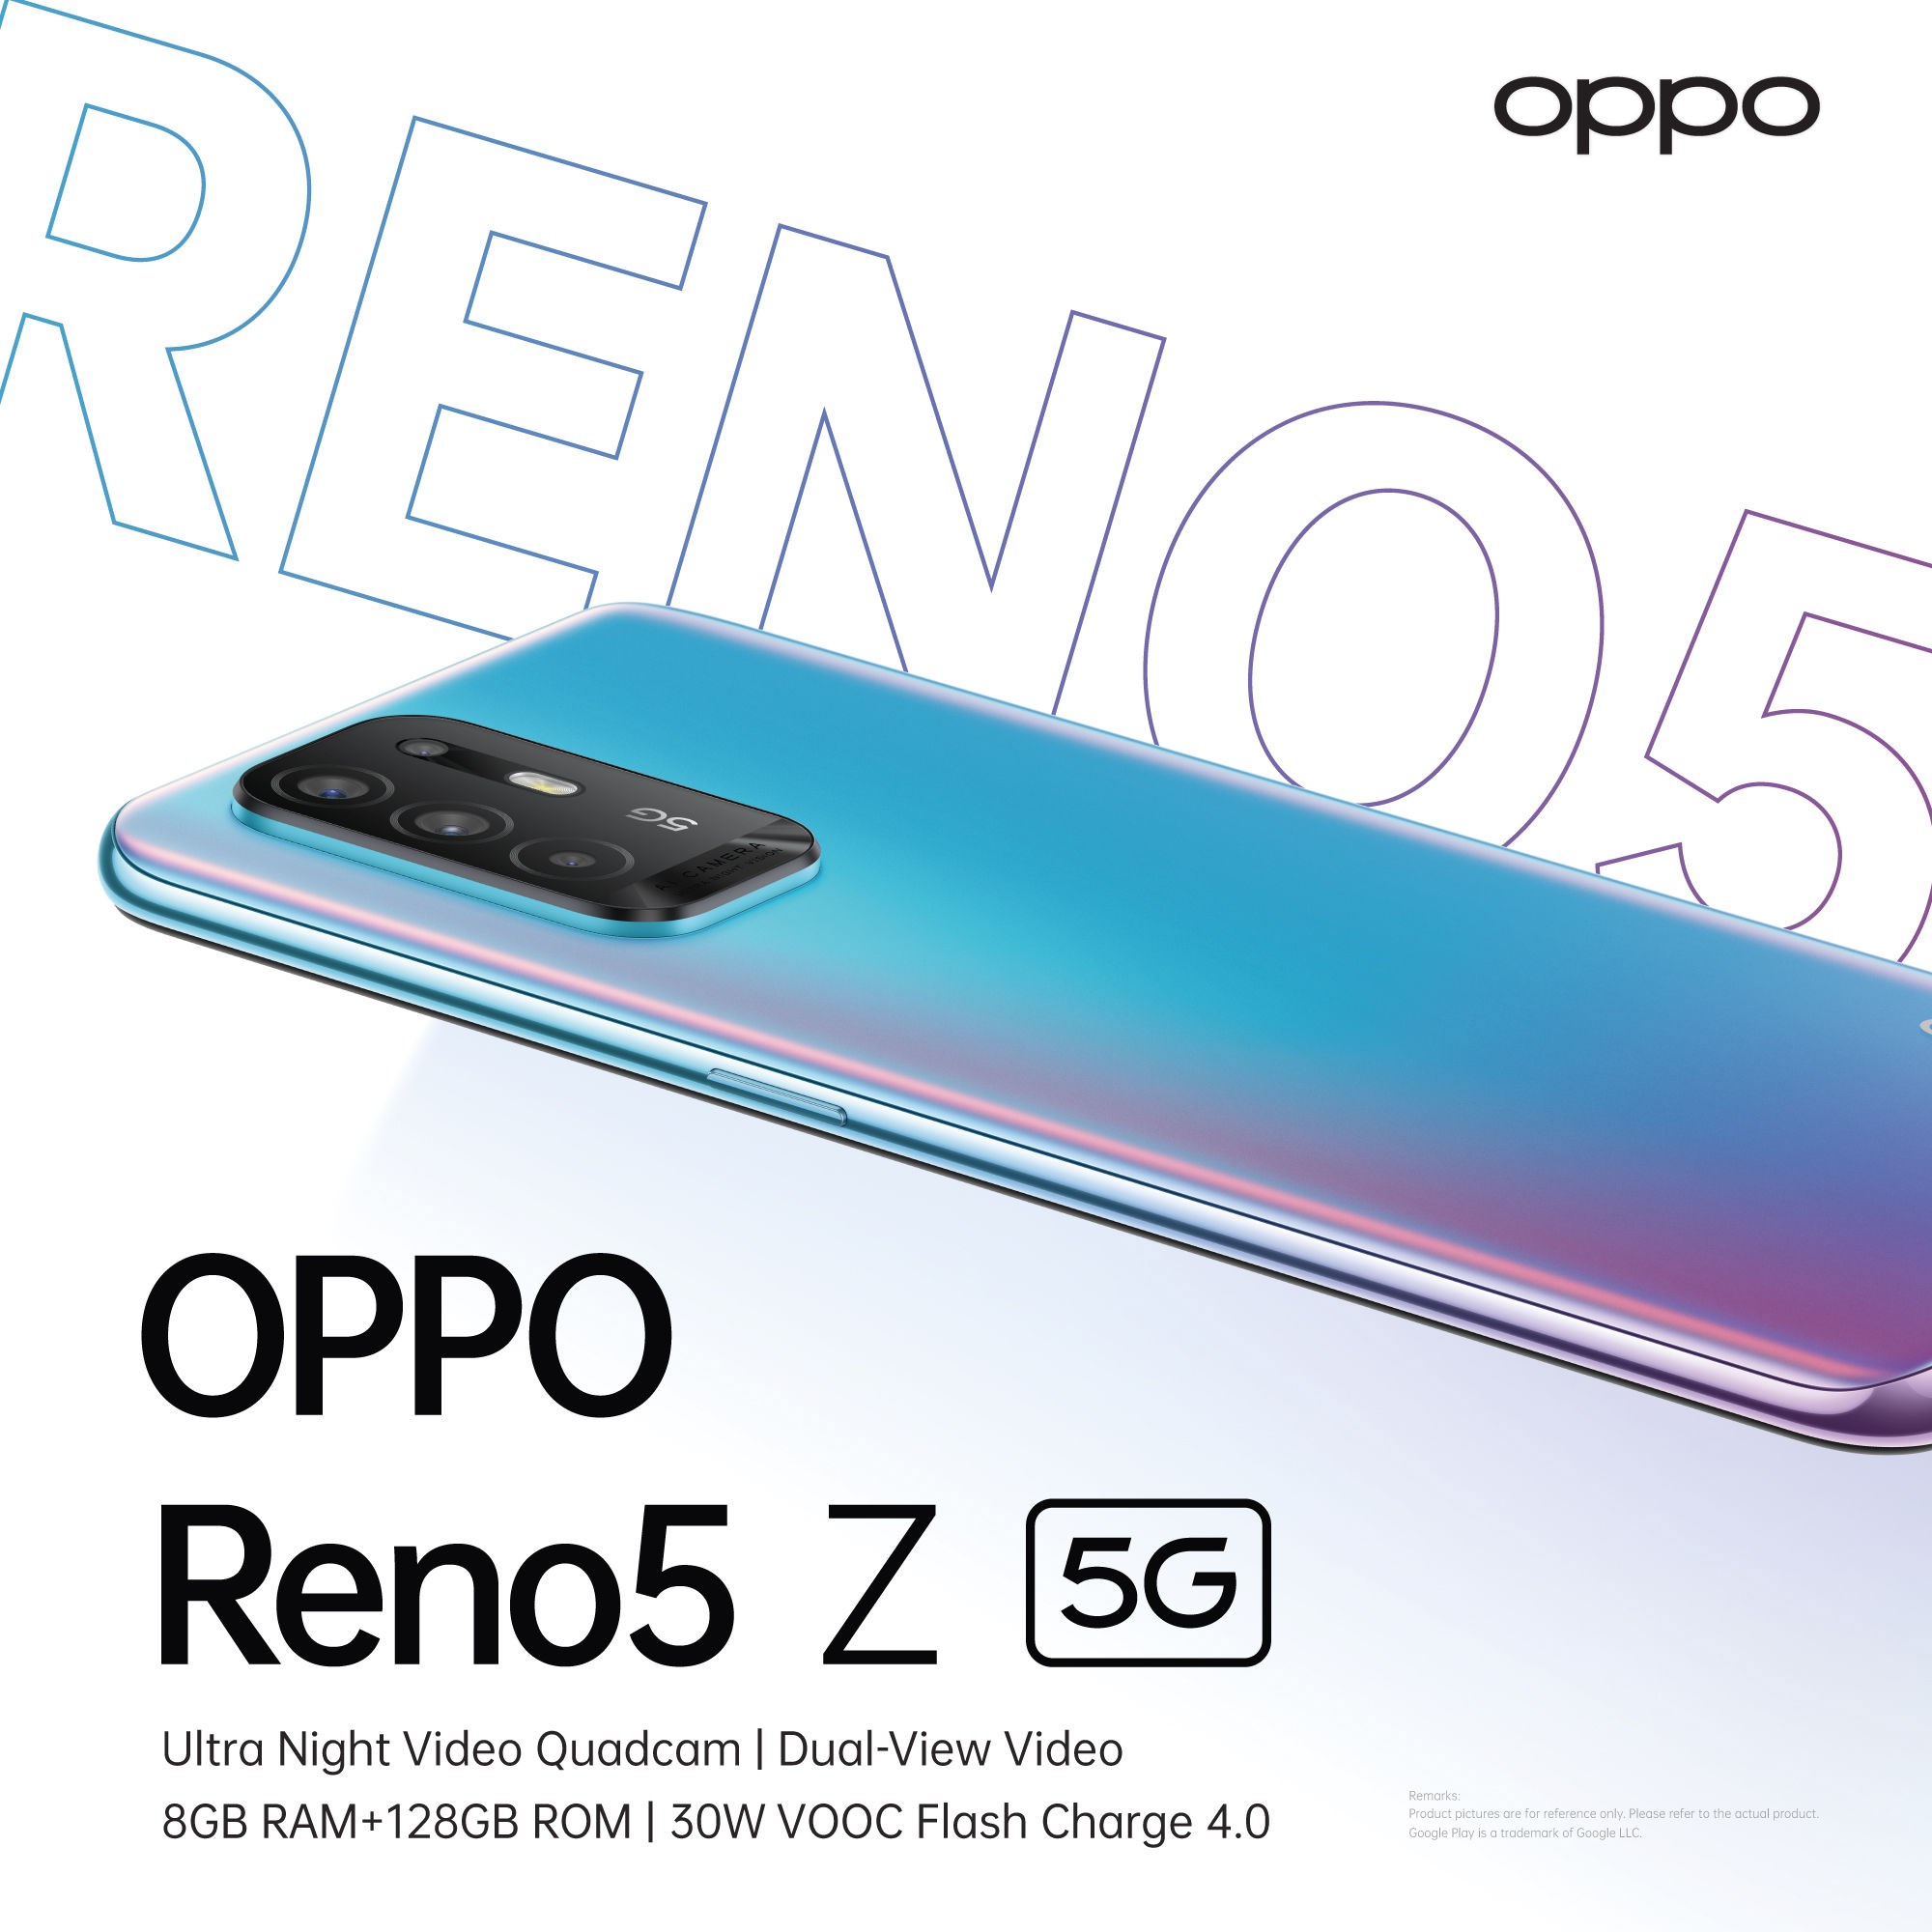 Dimensity 800U'dan güç alan Oppo Reno5 Z 5G tanıtıldı